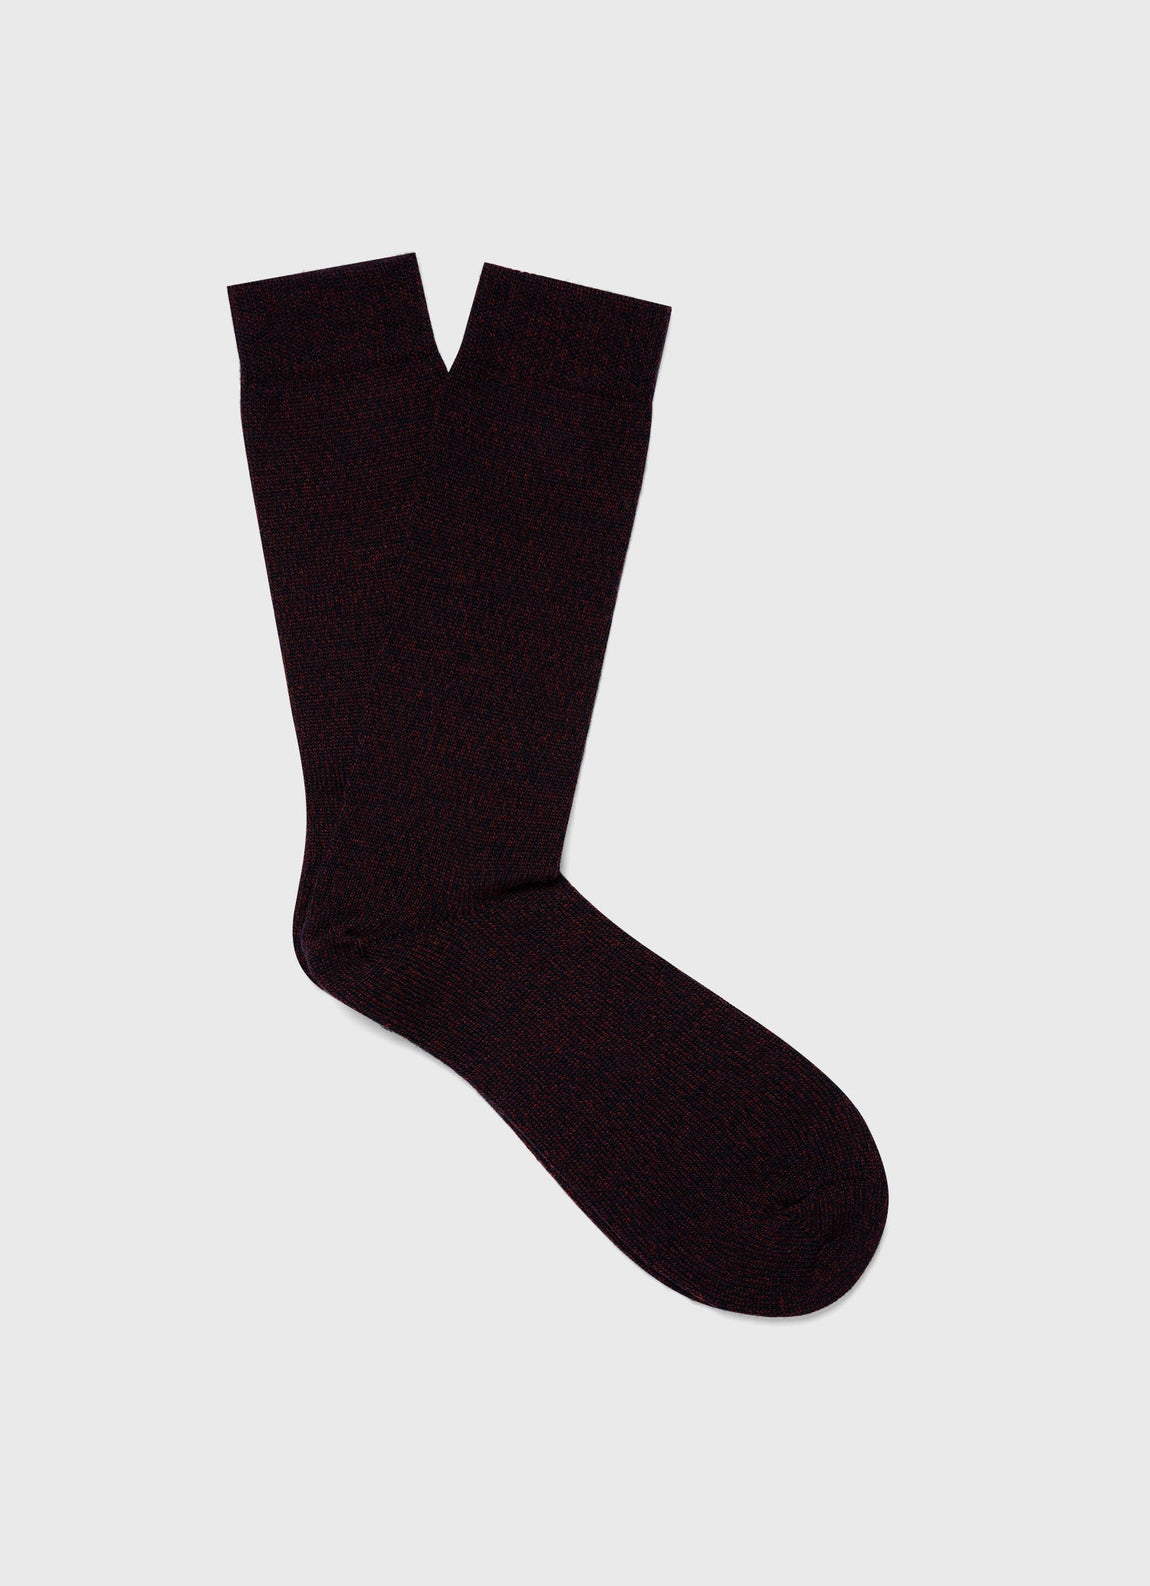 Men's Merino Wool Socks in Maroon Twist